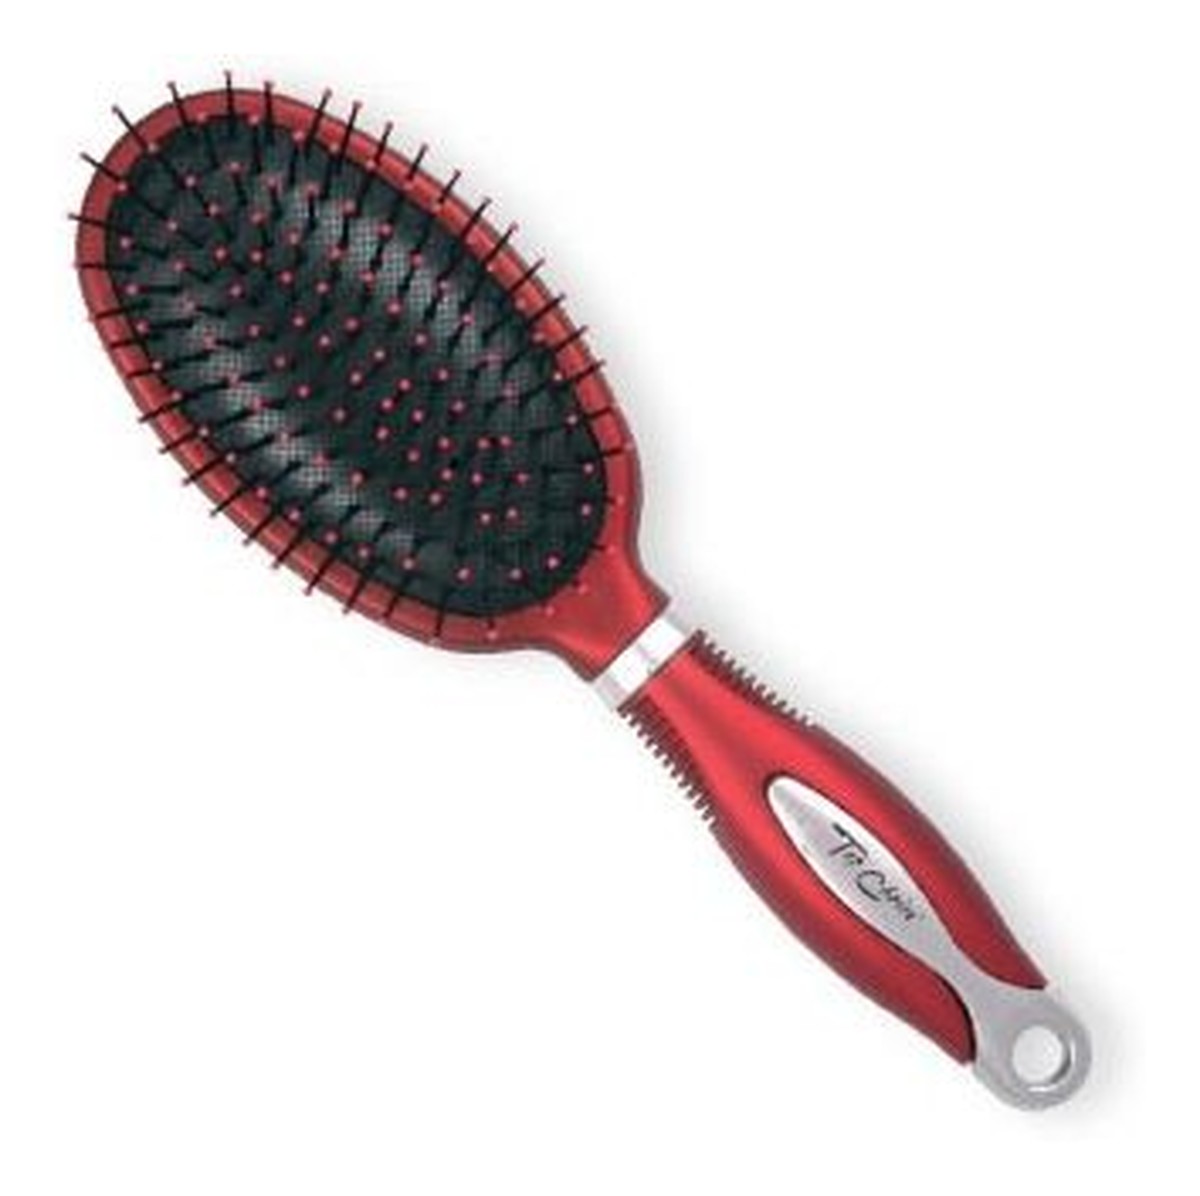 Exclusive Hair Brush szczotka szeroka srebrno-burgundowa 1 szt.